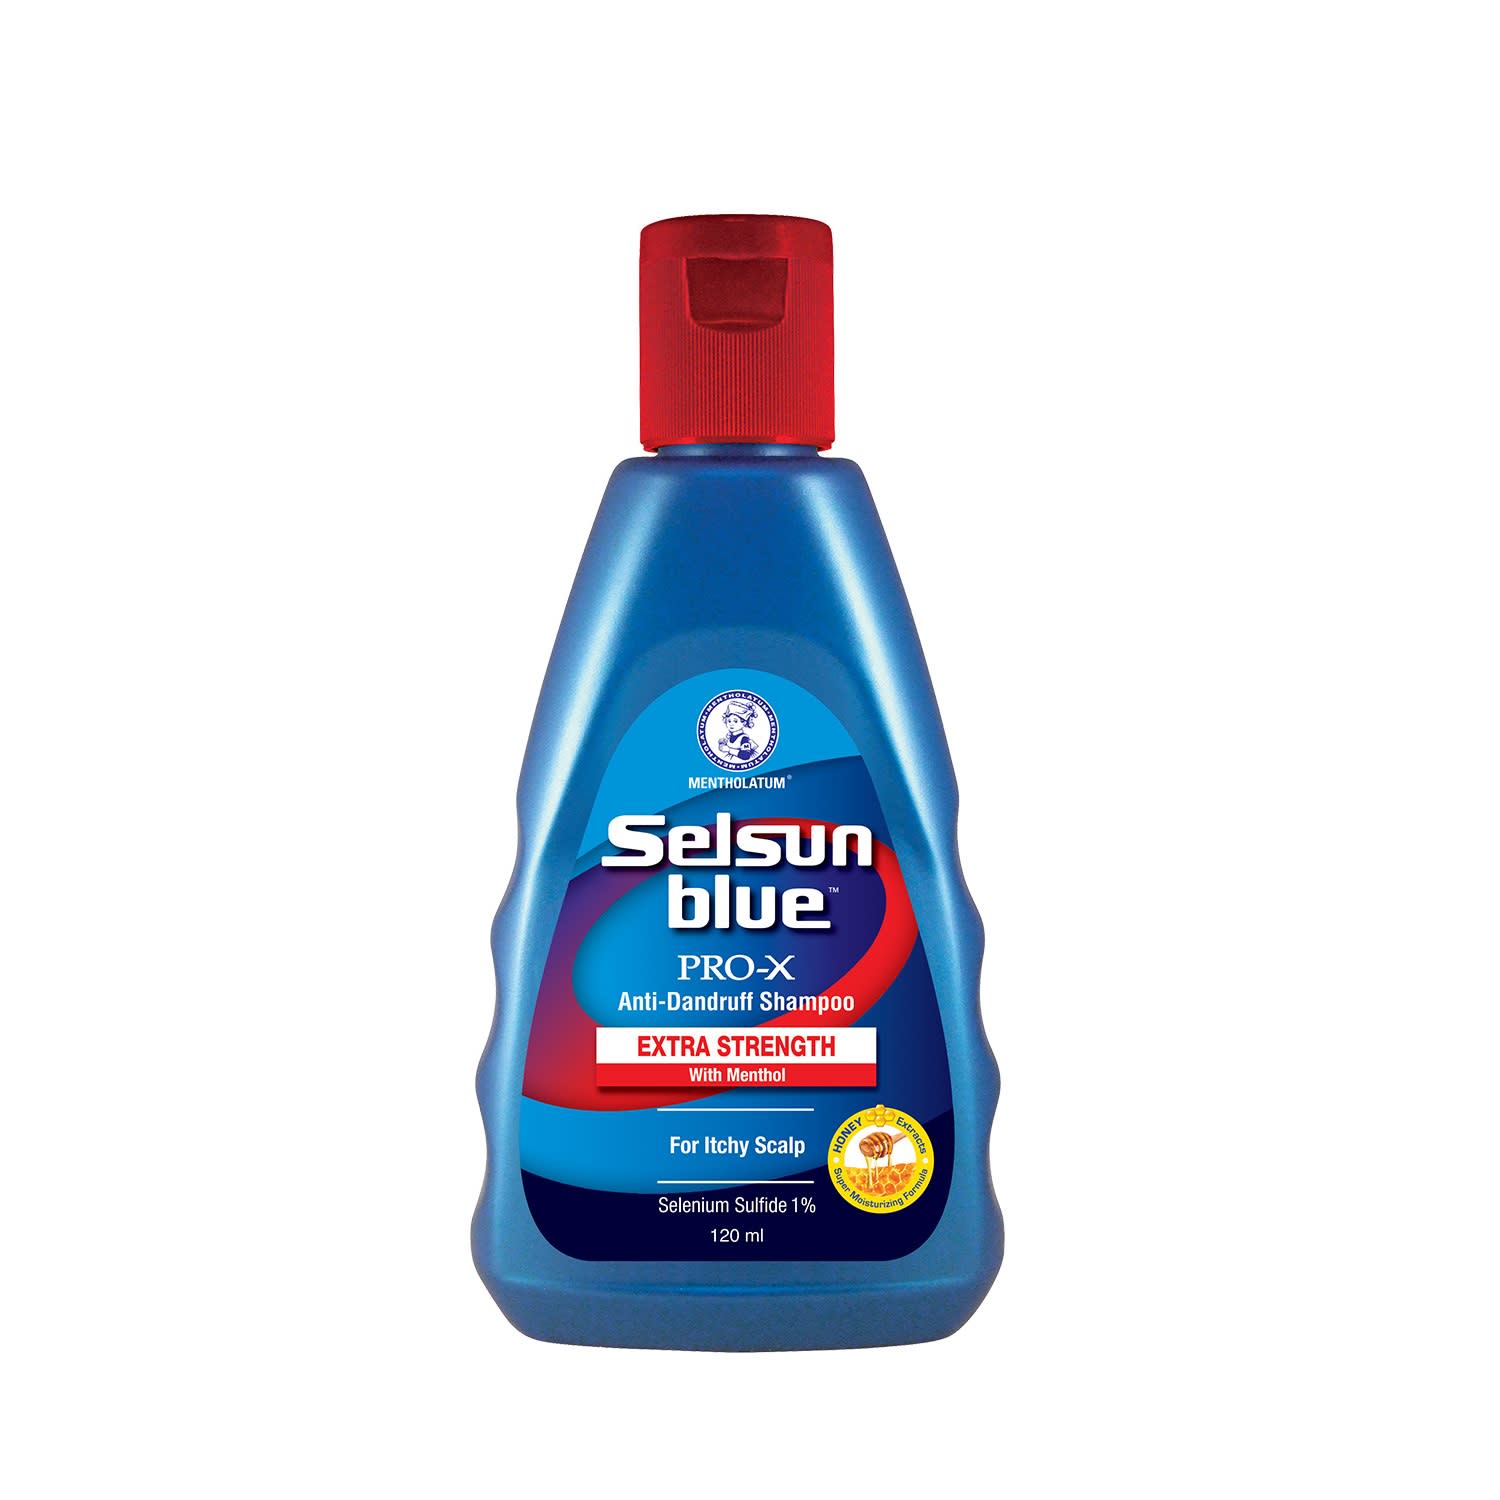 Selsun Blue PRO-X Anti-Dandruff Shampoo